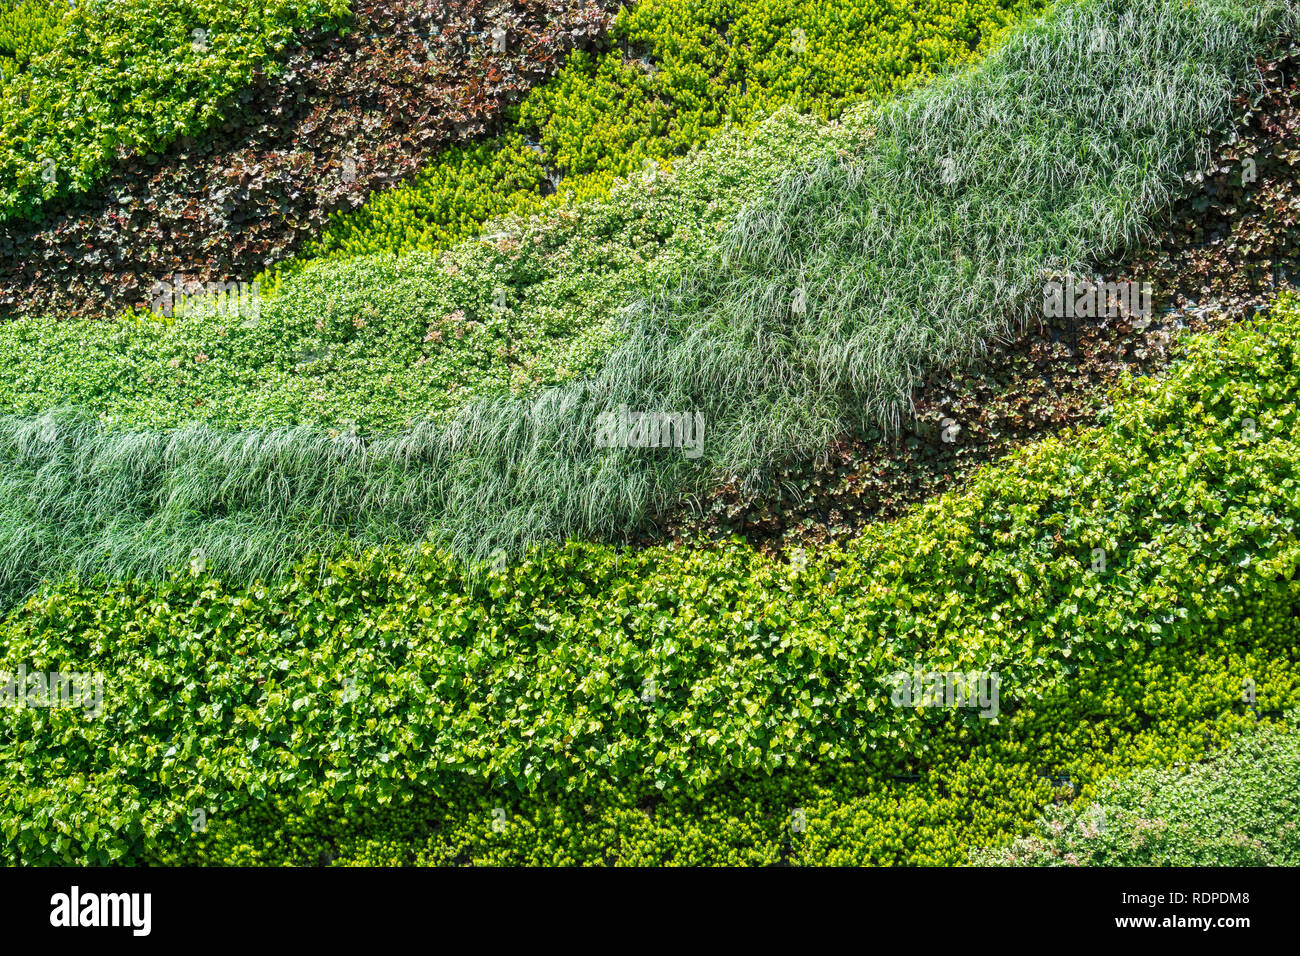 Pared verde, ecológico jardín vertical con una gran variedad de plantas textura Foto de stock